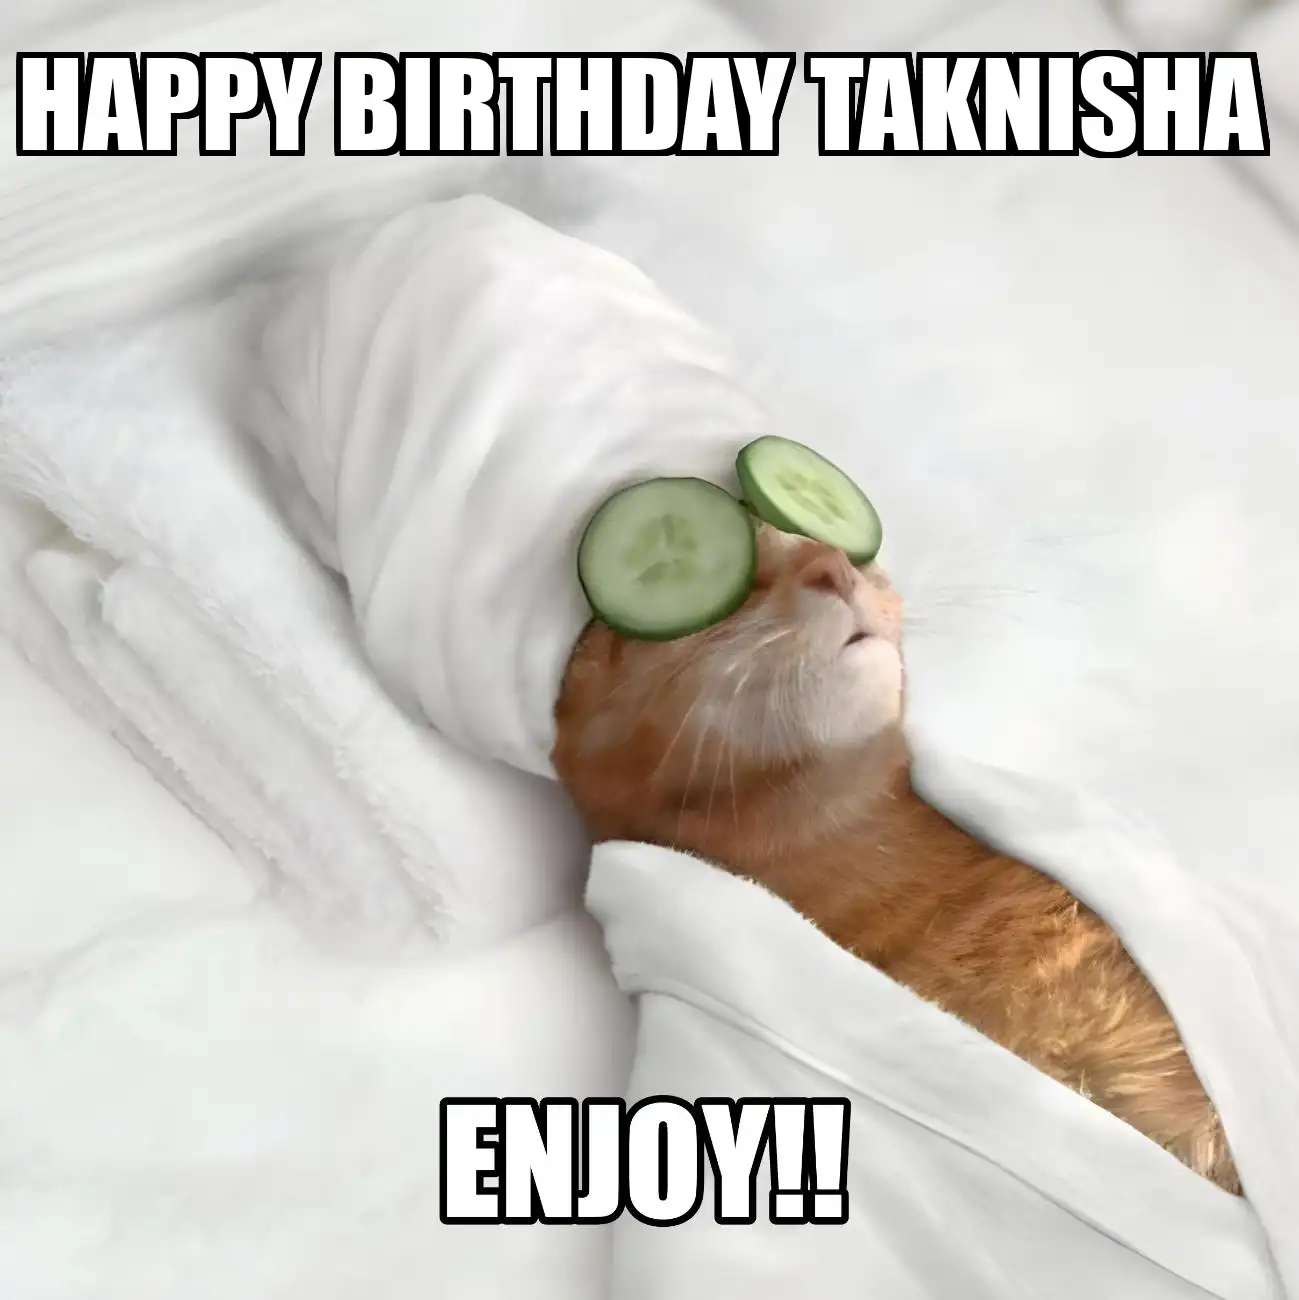 Happy Birthday Taknisha Enjoy Cat Meme